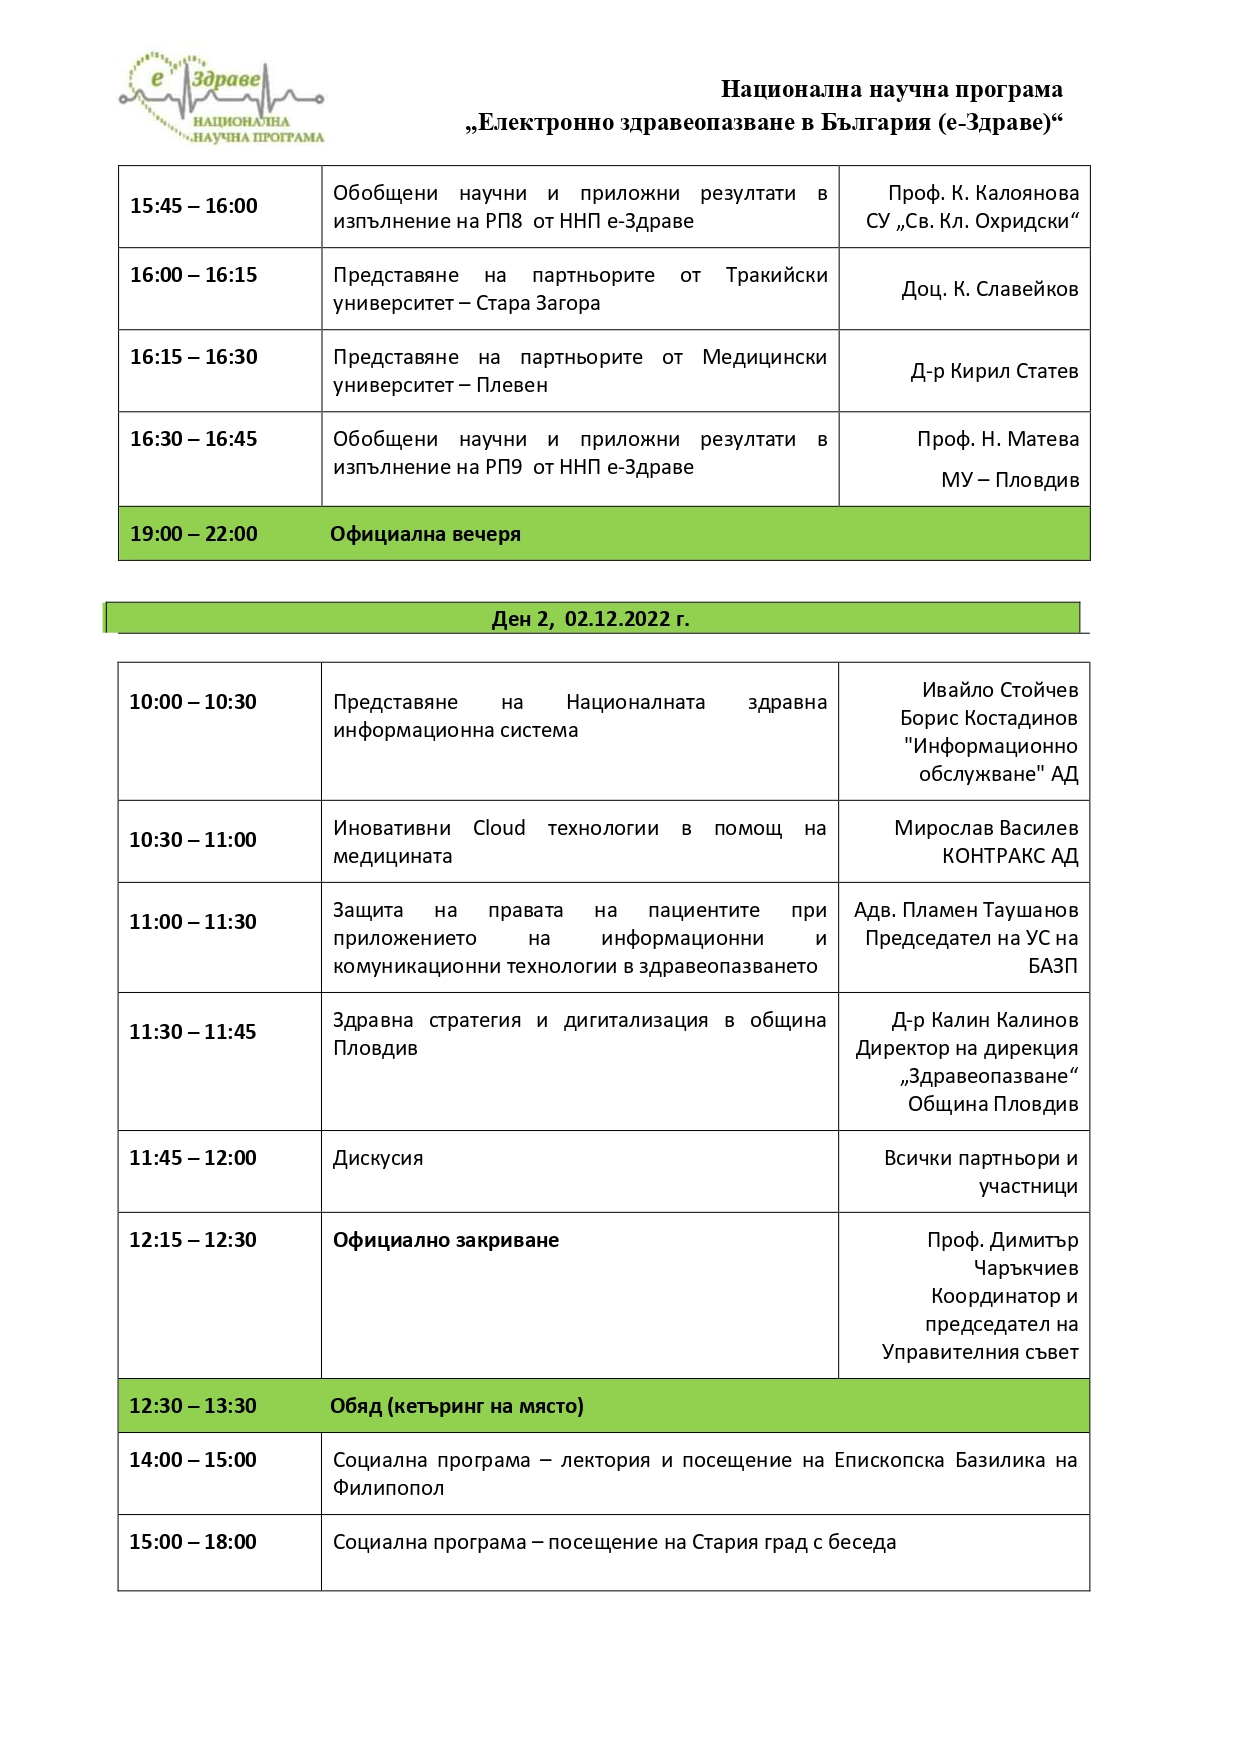 Заключителна конференция ННП "Електронно здравеопазване в България (е-Здраве)" - програма